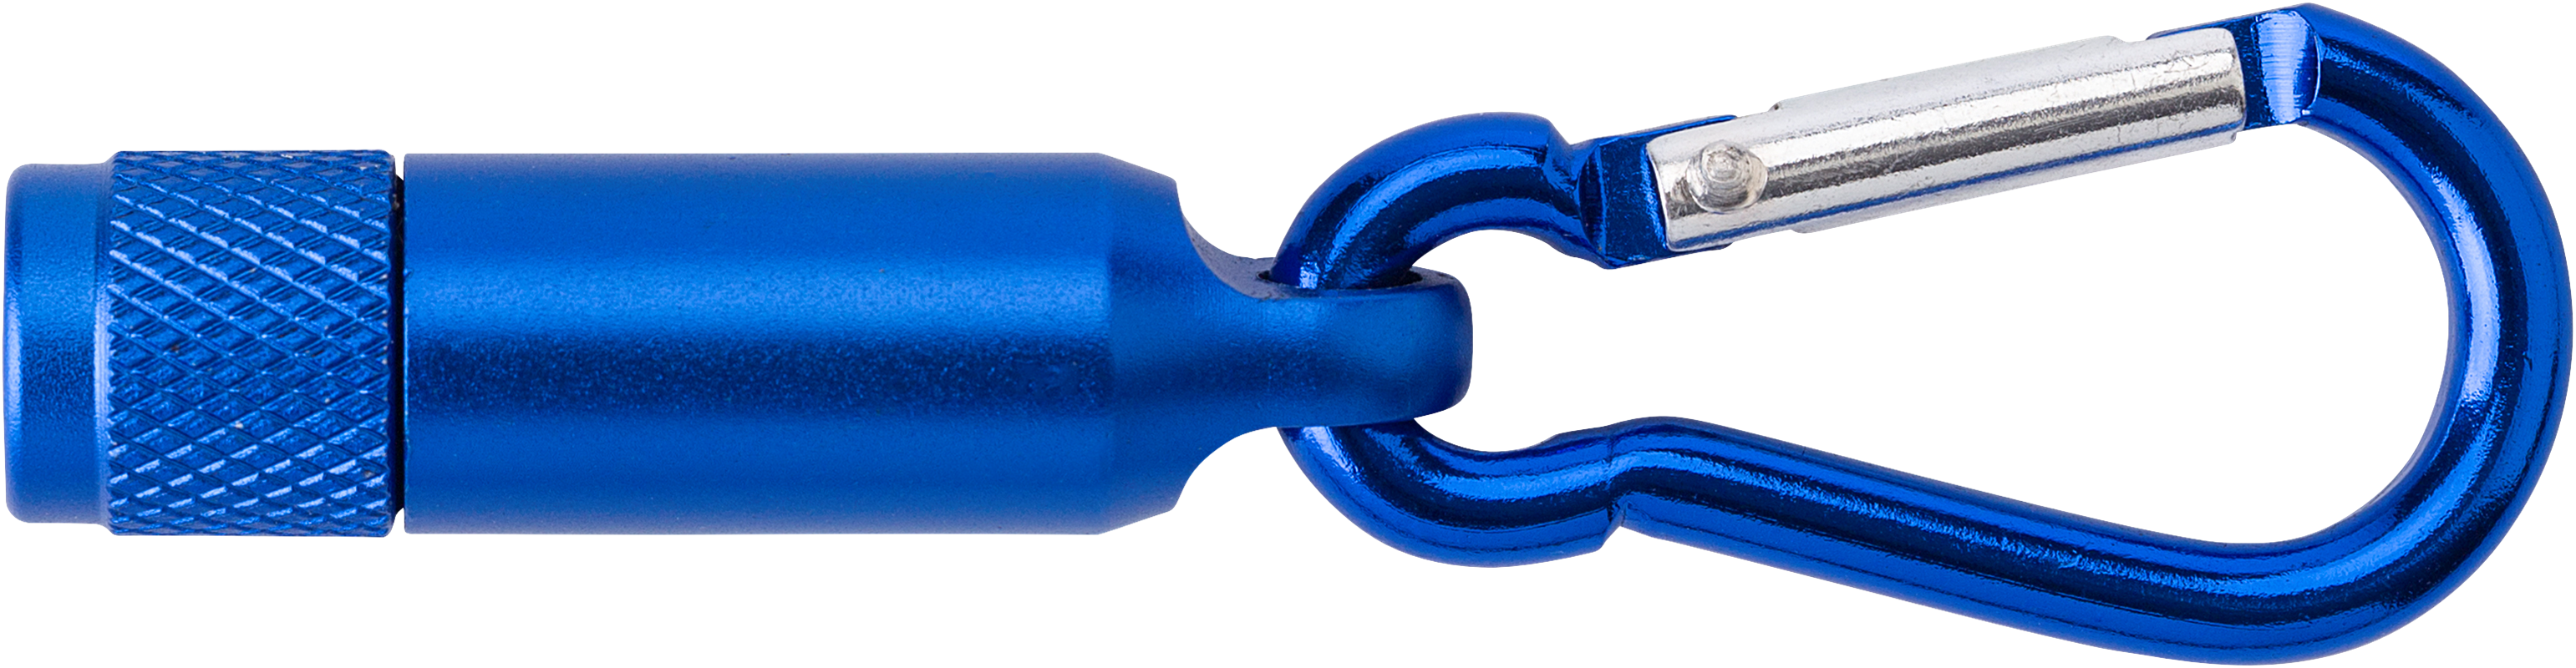 Aluminium mini torch 432009_948 (Royal Blue)